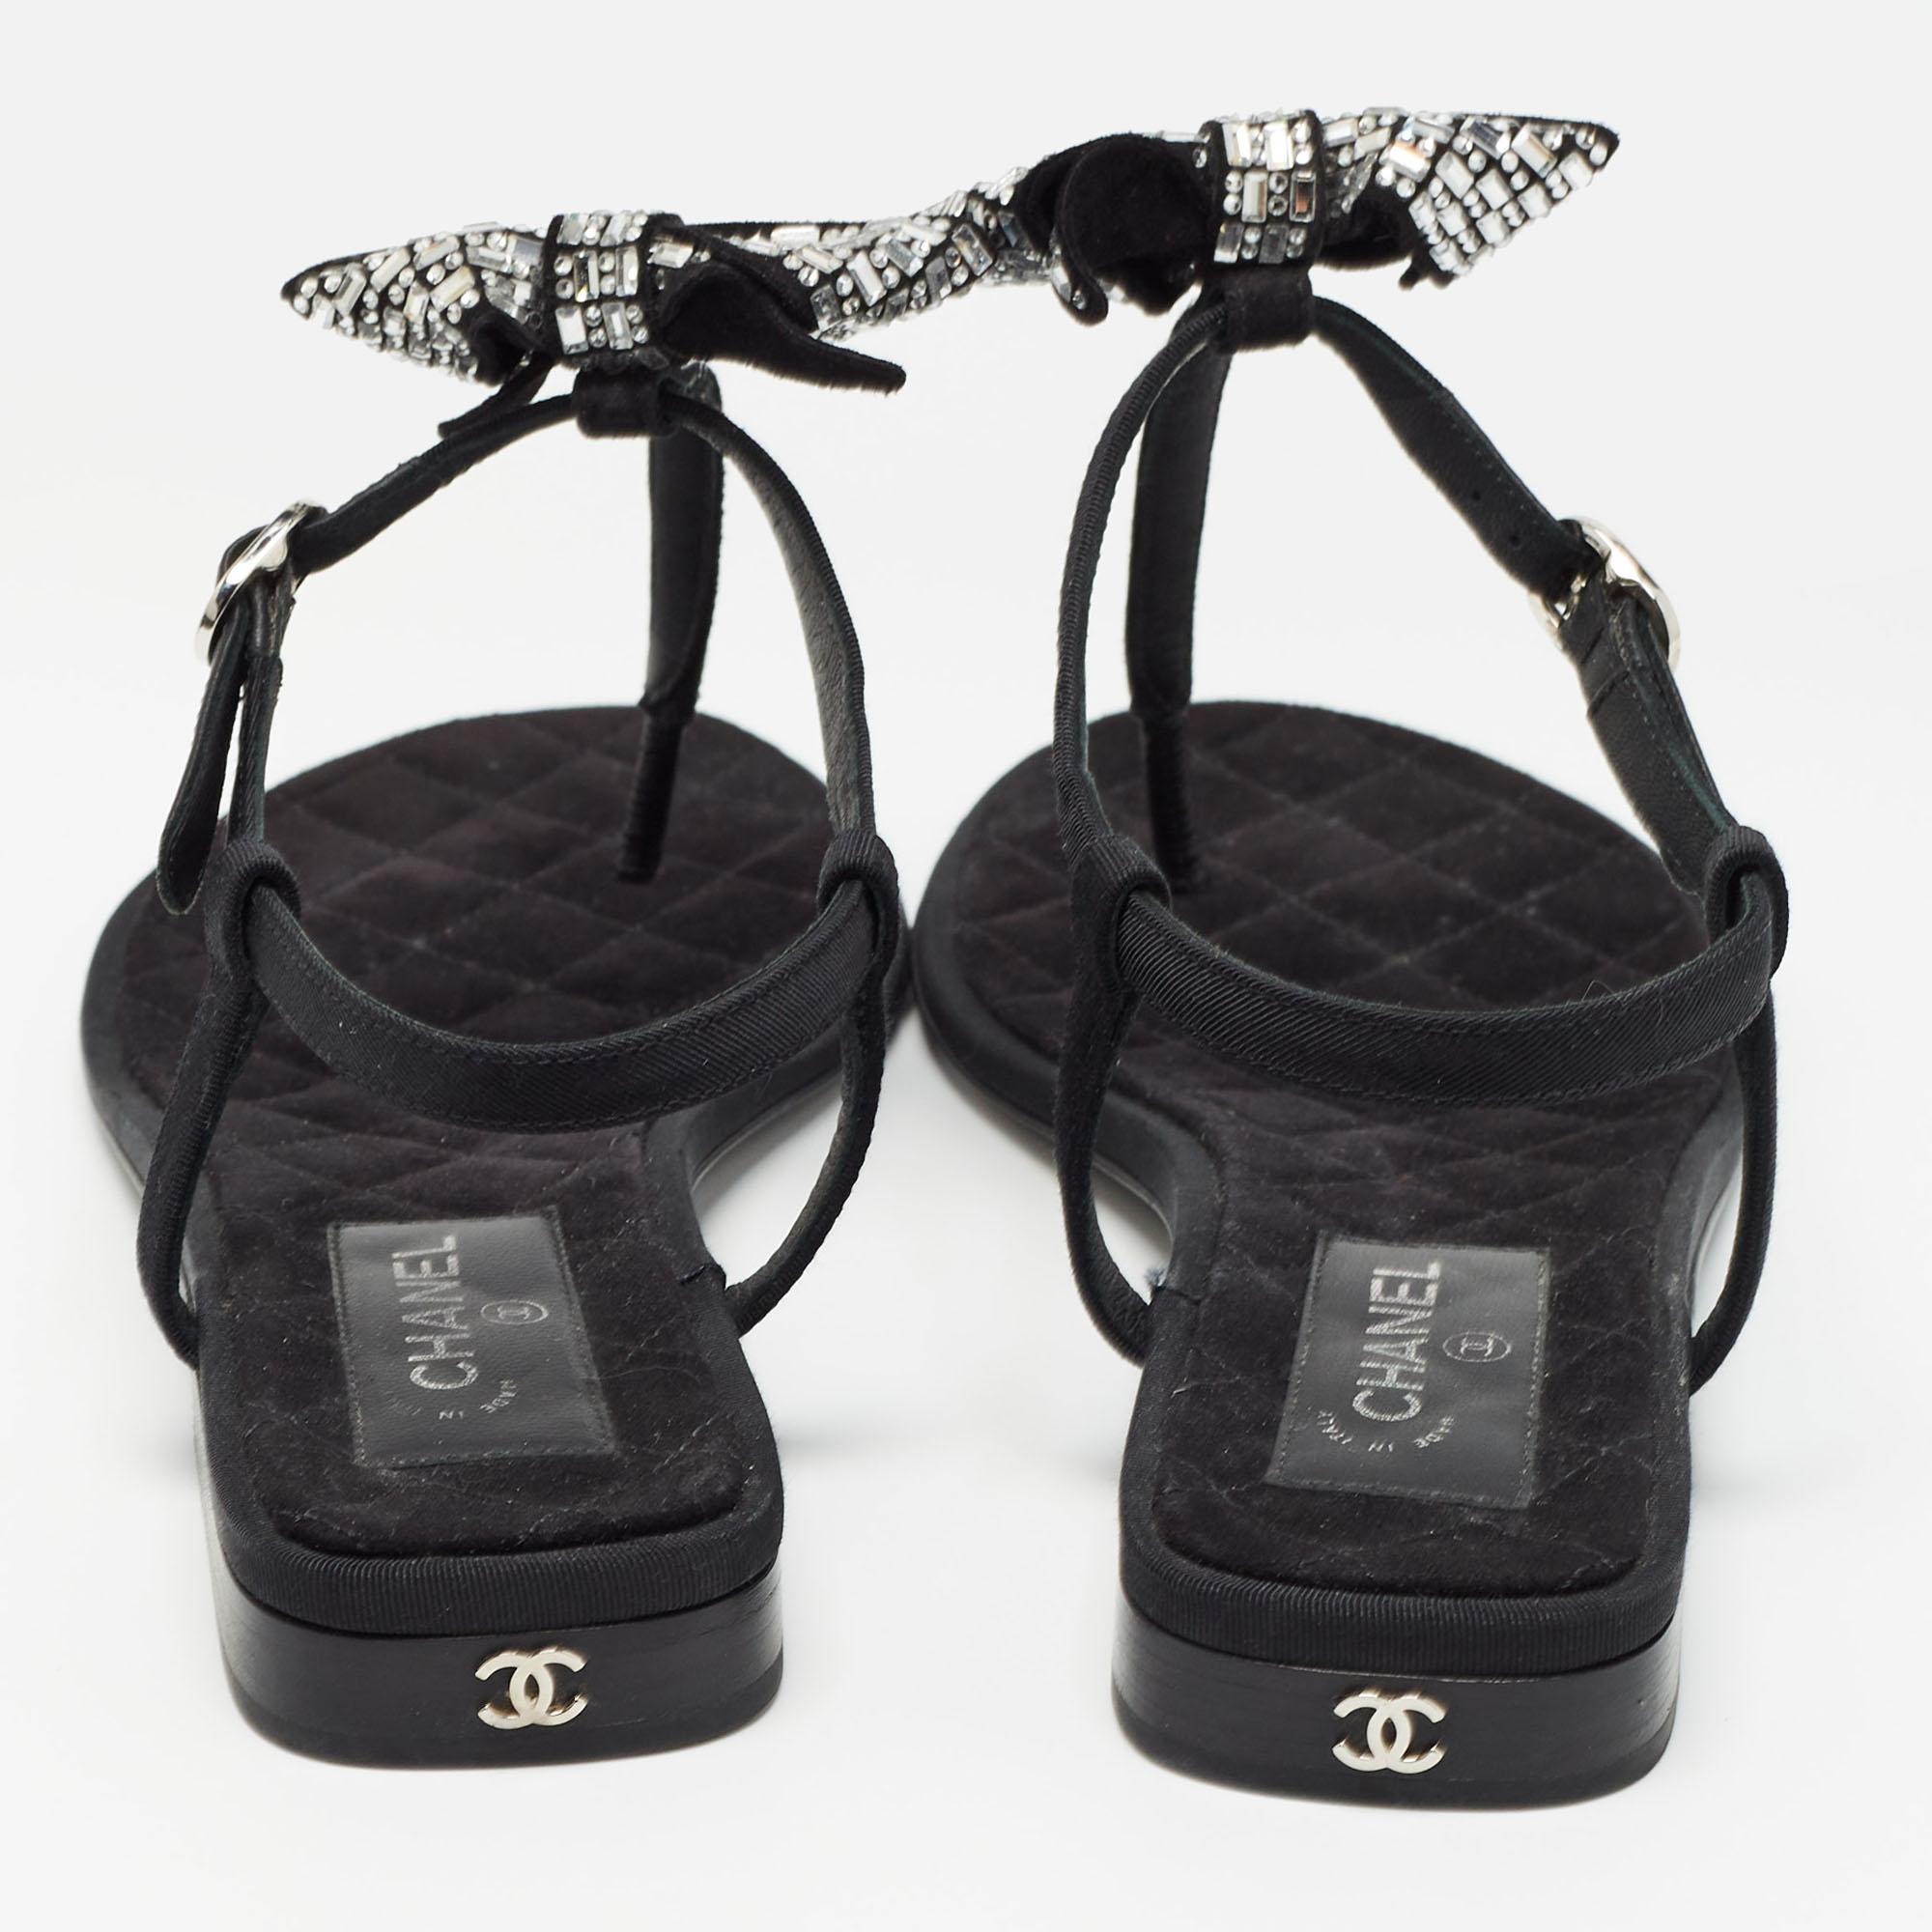 Sehen diese Sandalen von Chanel nicht absolut königlich und prächtig aus? Diese fabelhaften schwarzen Sandalen verzaubern mit ihrem Canvas-Außenmaterial und der mit Wildleder gefütterten Innensohle. Mit Verzierungen auf dem Oberteil sind sie jeden